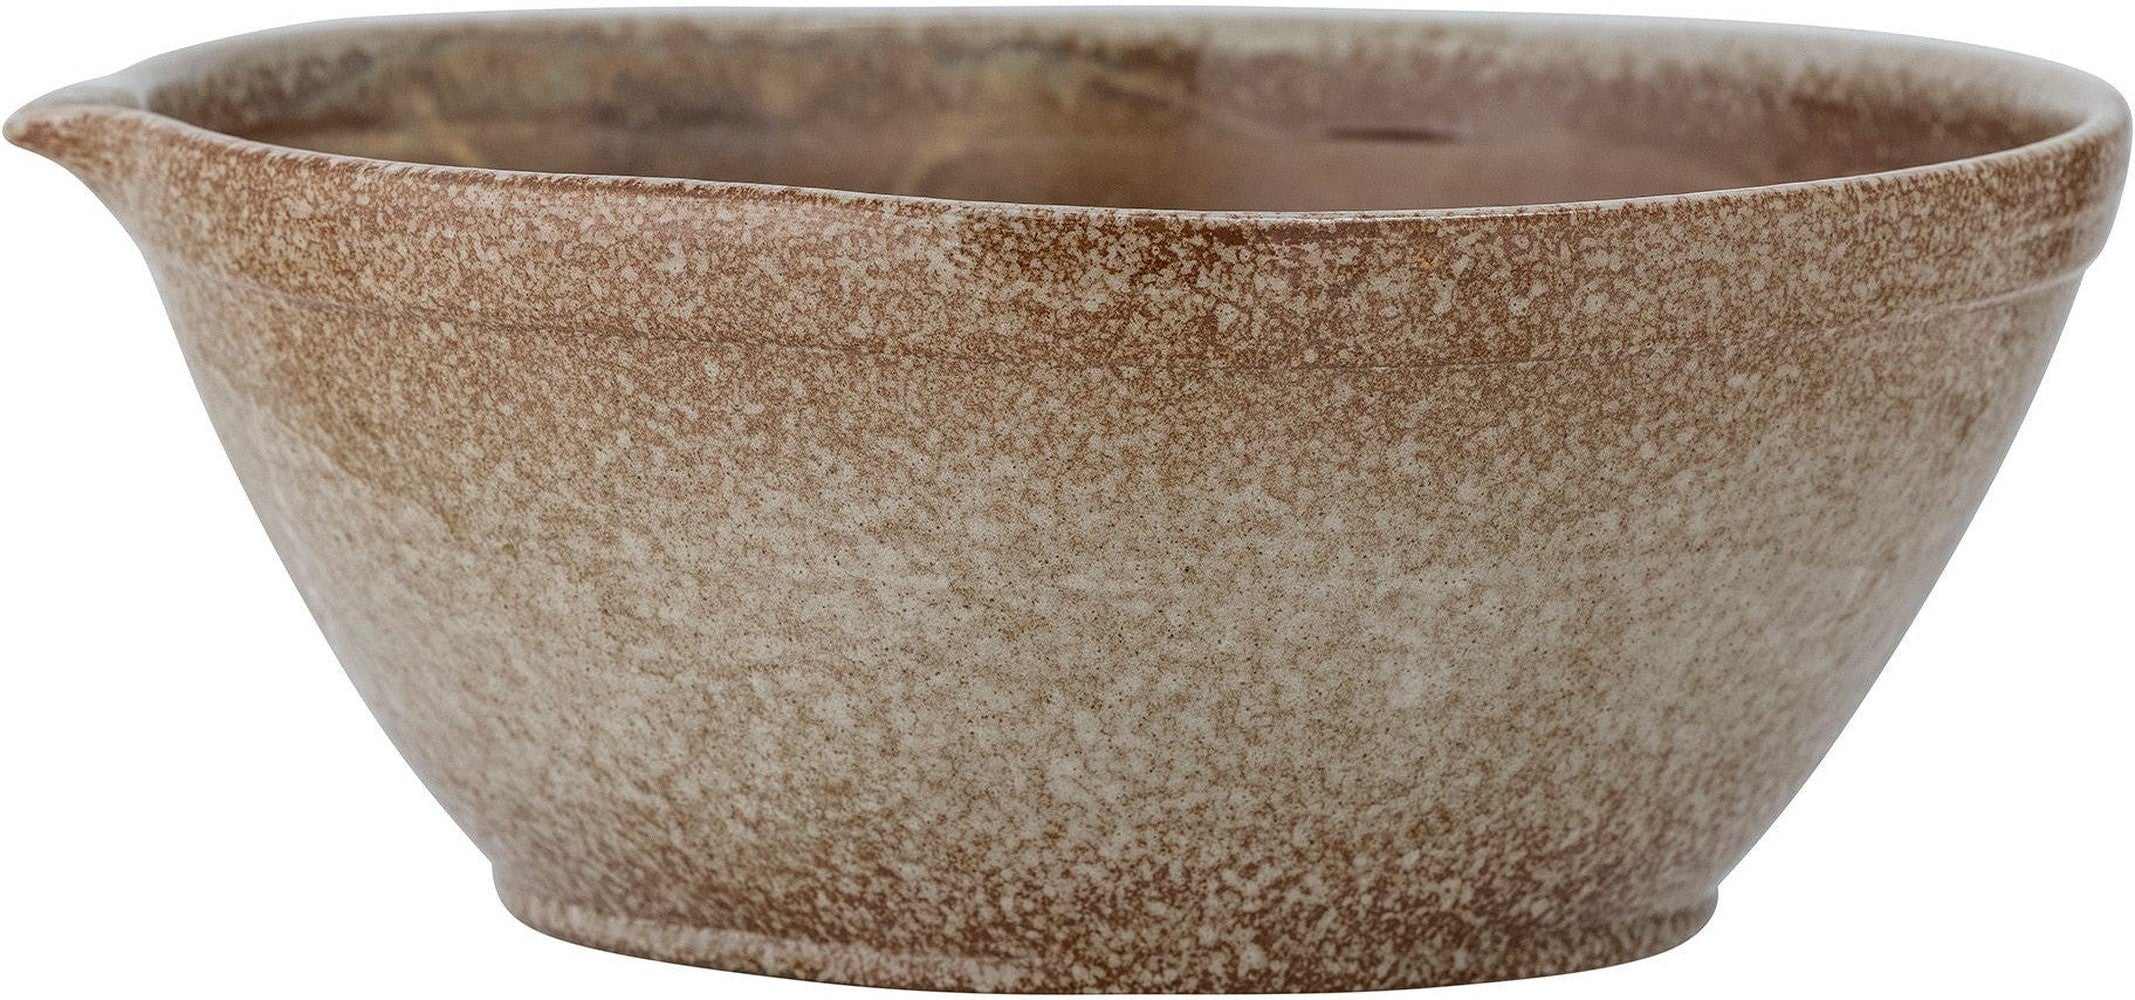 Creative Collection Lani Baking Bowl, Brown, Stoneware